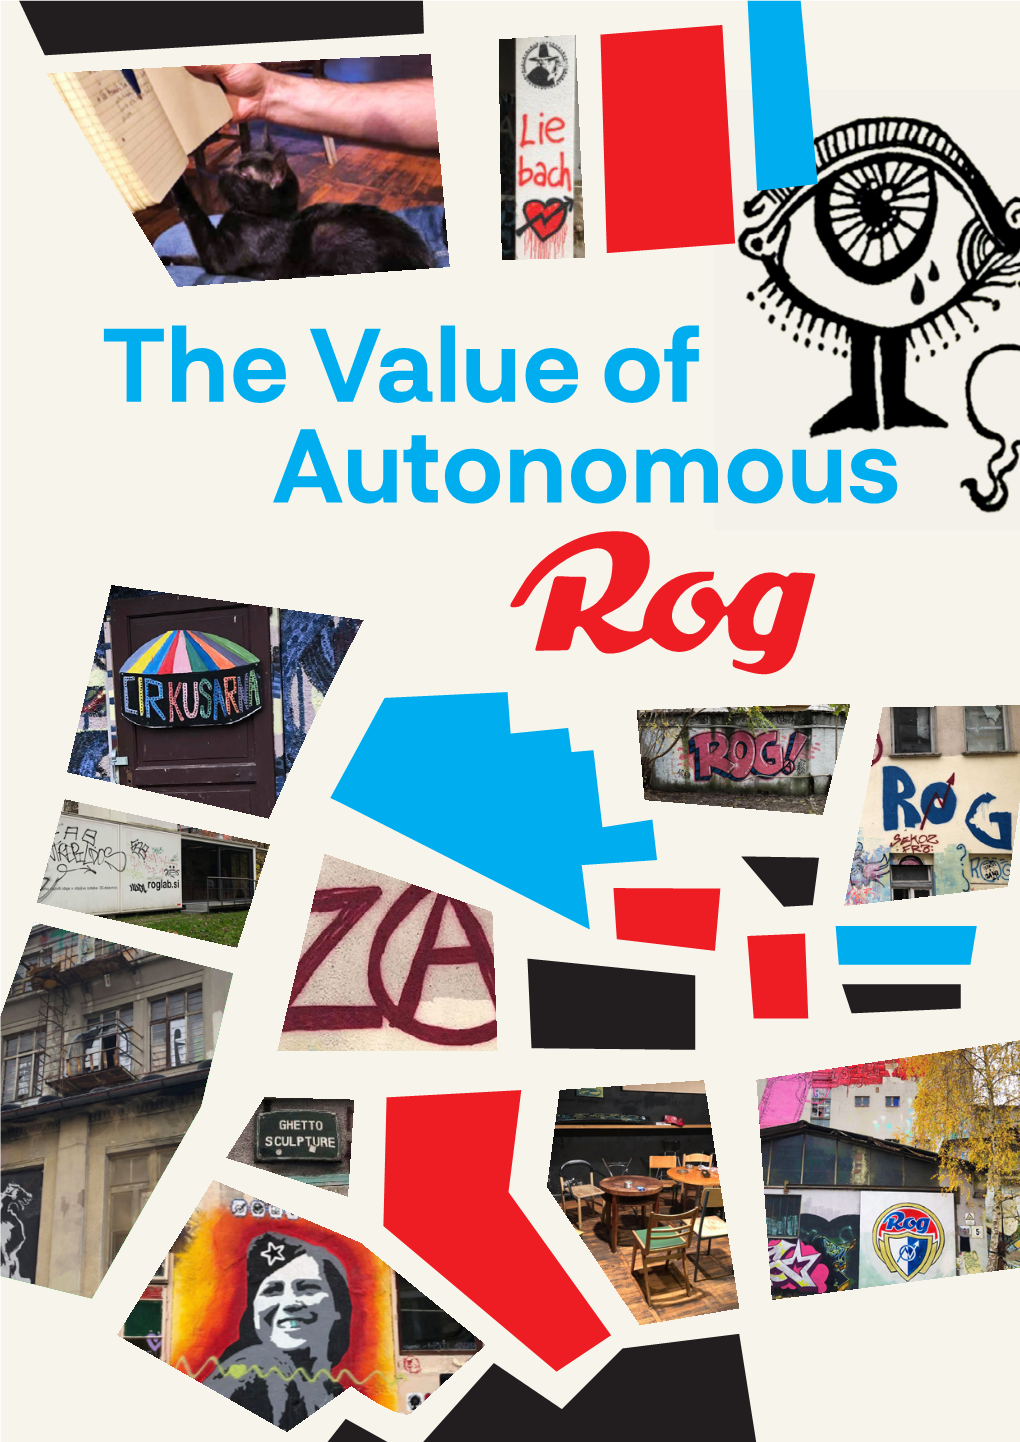 The Value of Autonomous